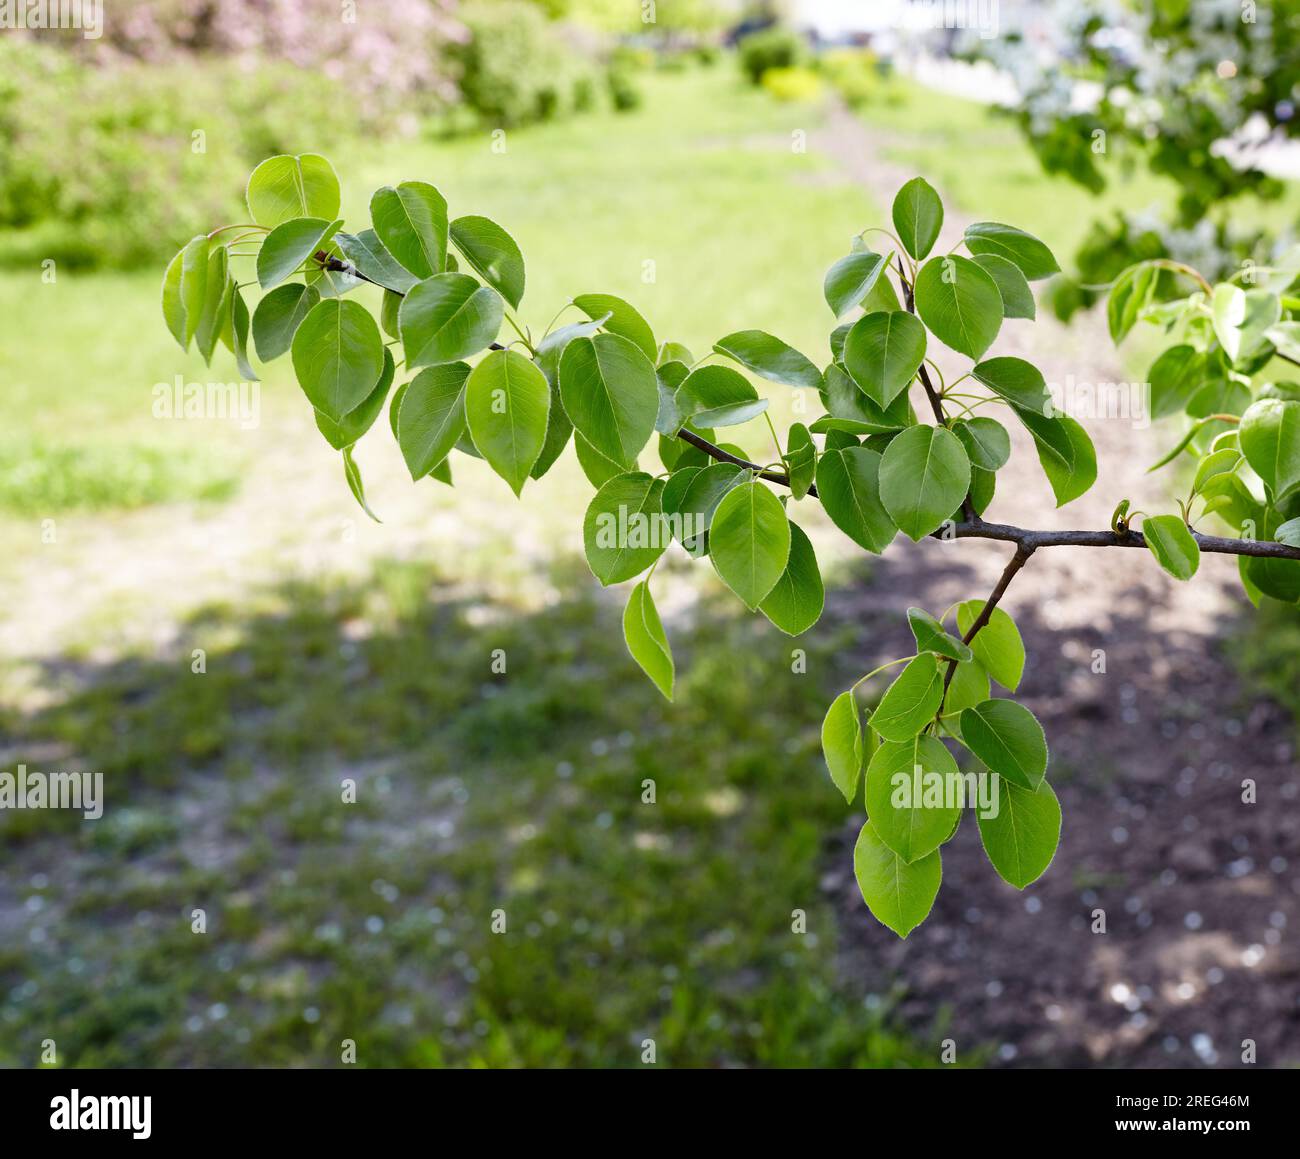 Belles feuilles de poire verte sur branche.arbre de poire à fleurs.fond de printemps frais sur nature à l'extérieur Banque D'Images